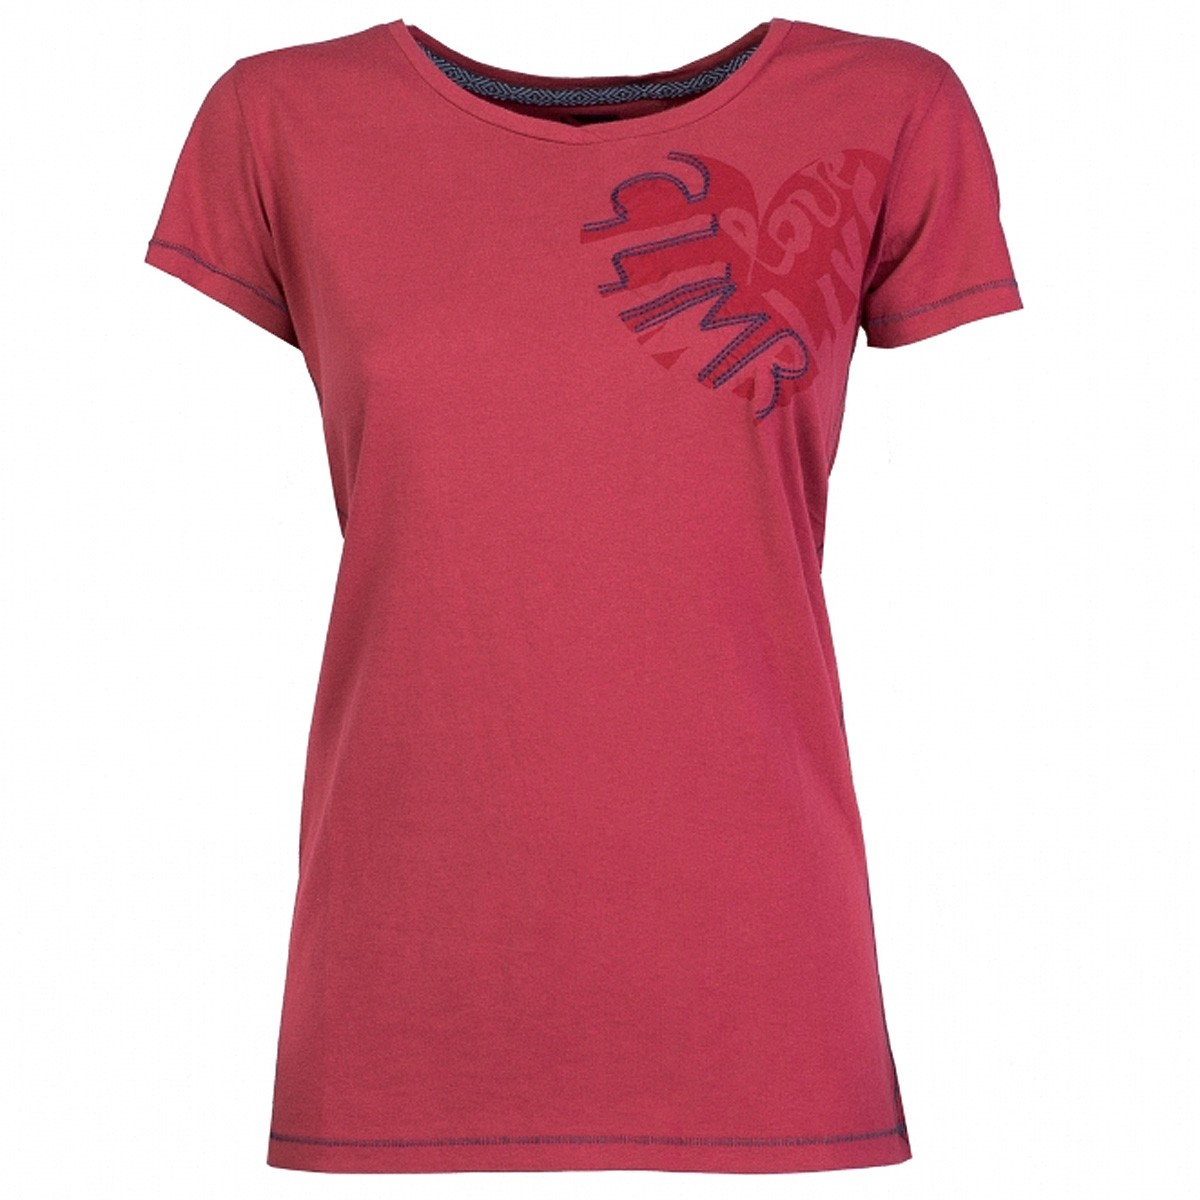 Trekking t-shirt Rock Experience Brea Woman red | EN